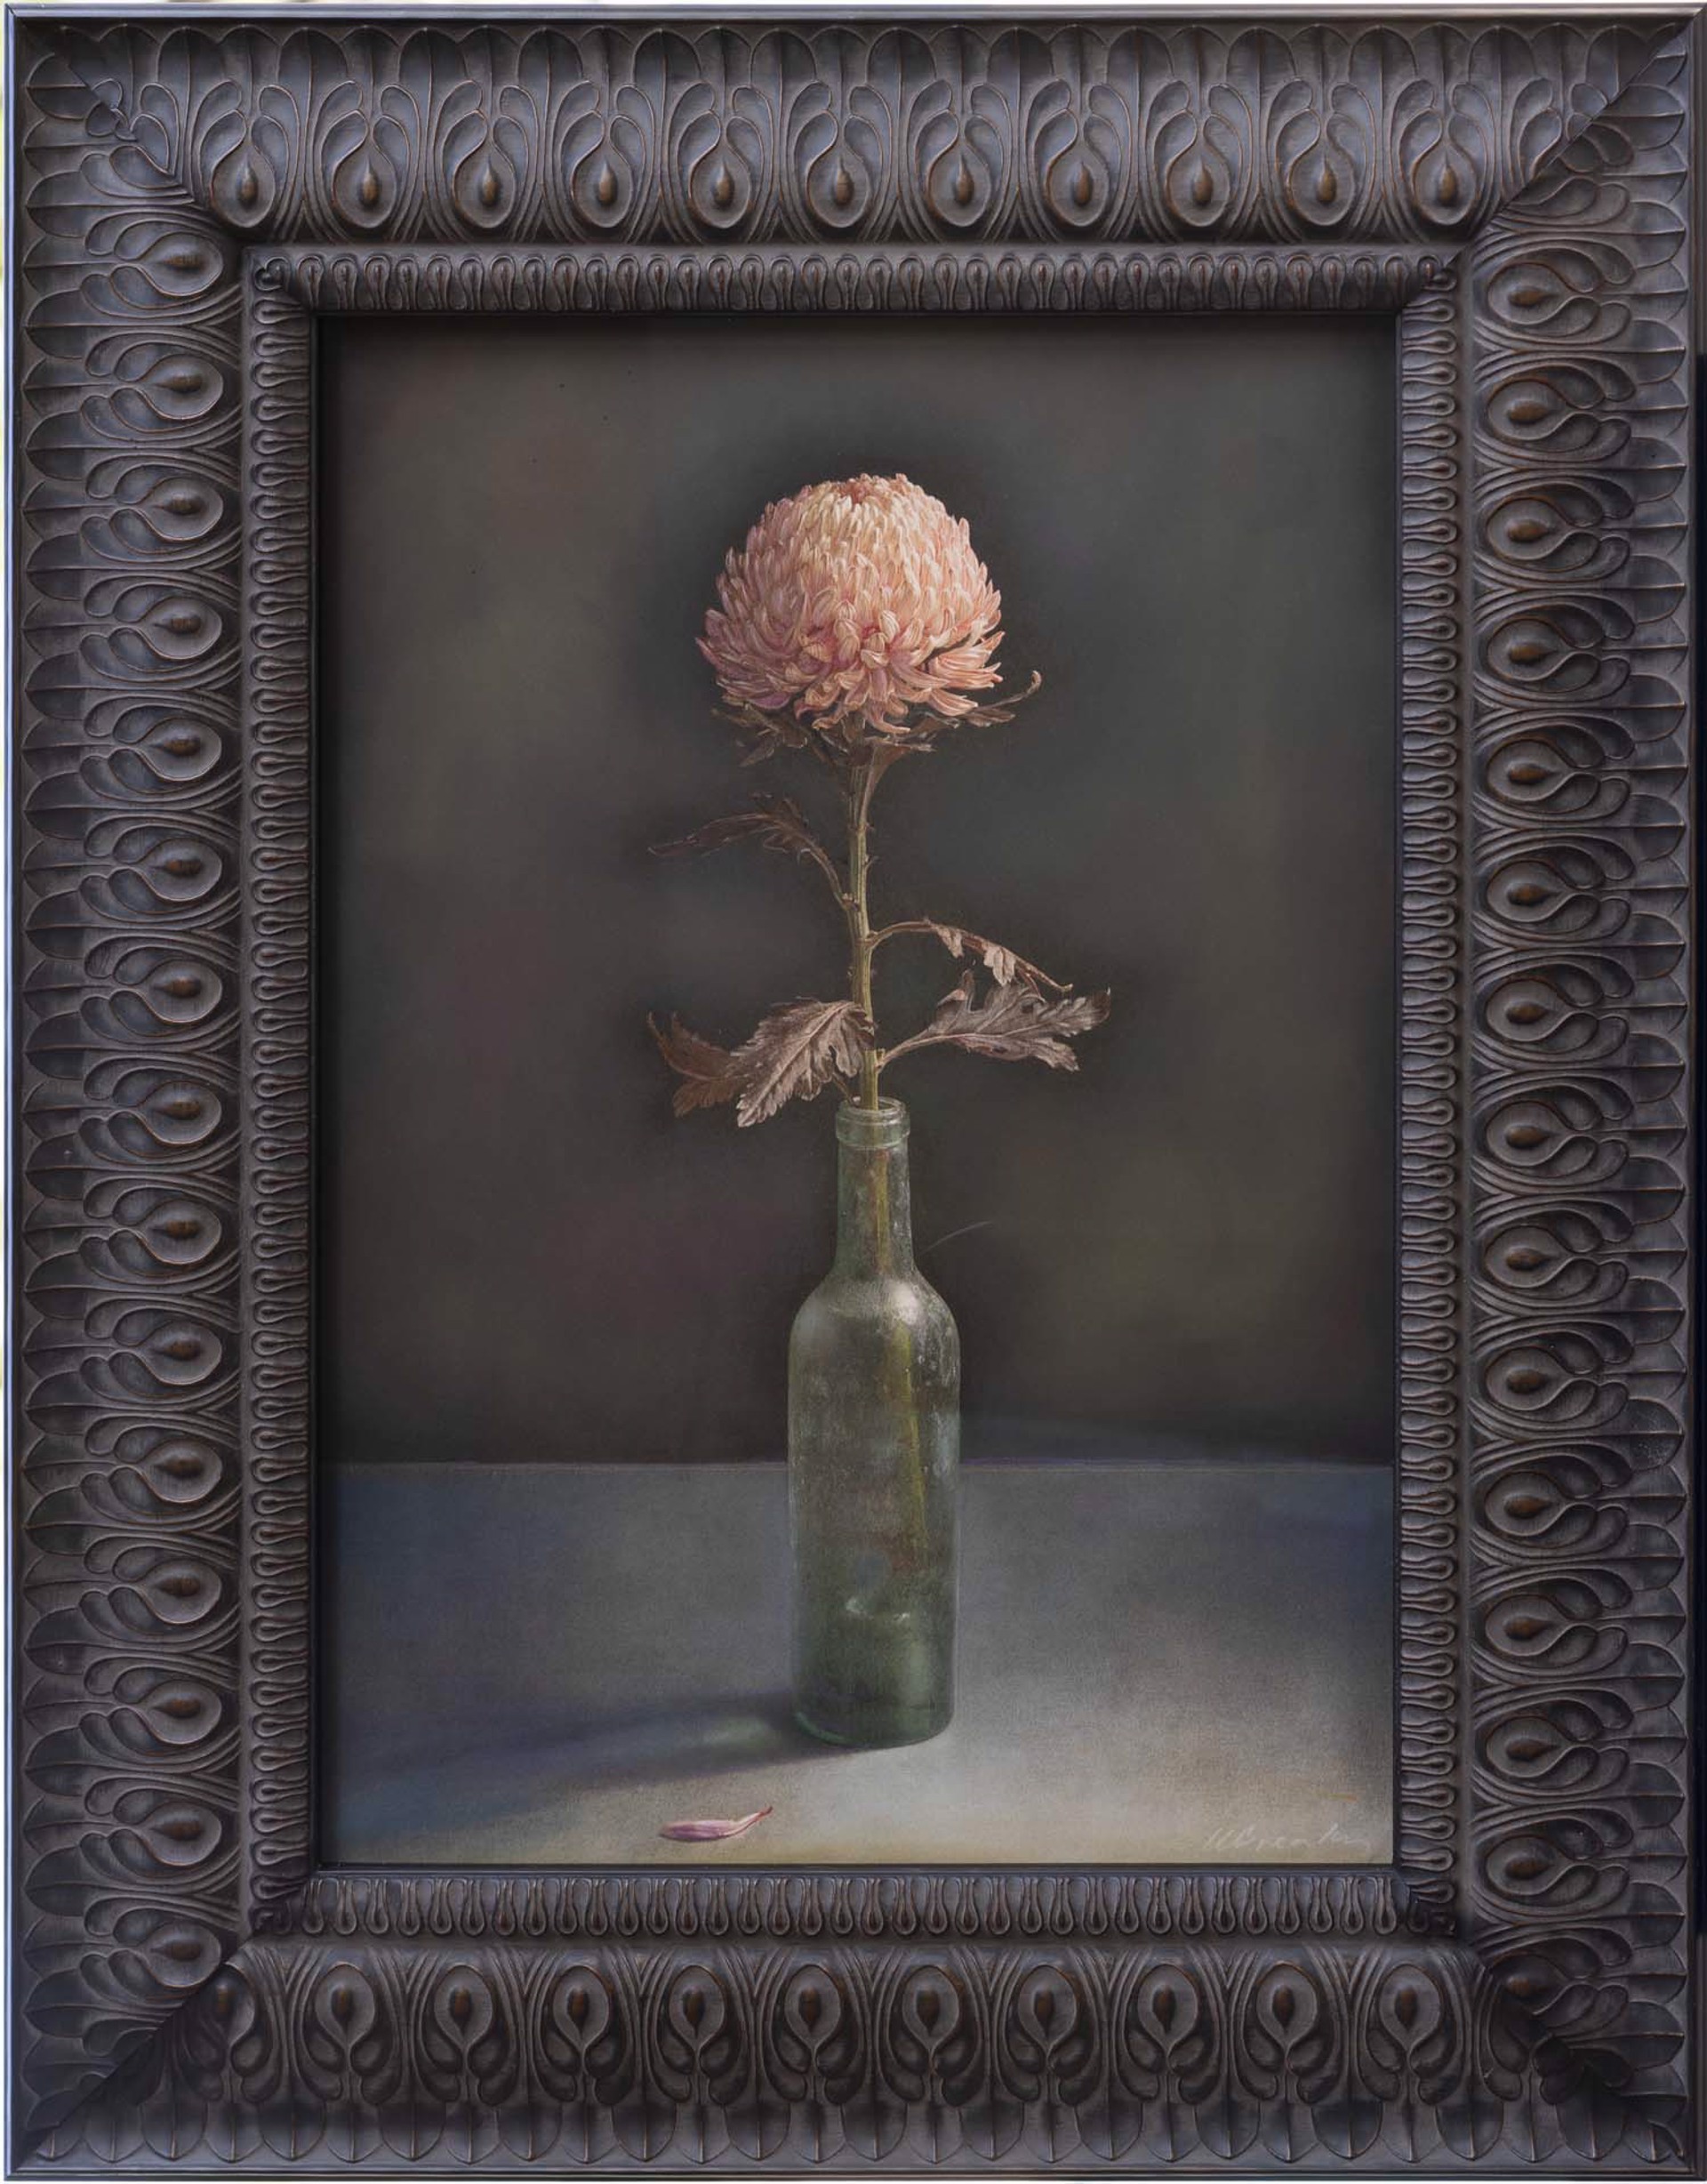 Single Chrysanthemum in Bottle by Kate Breakey